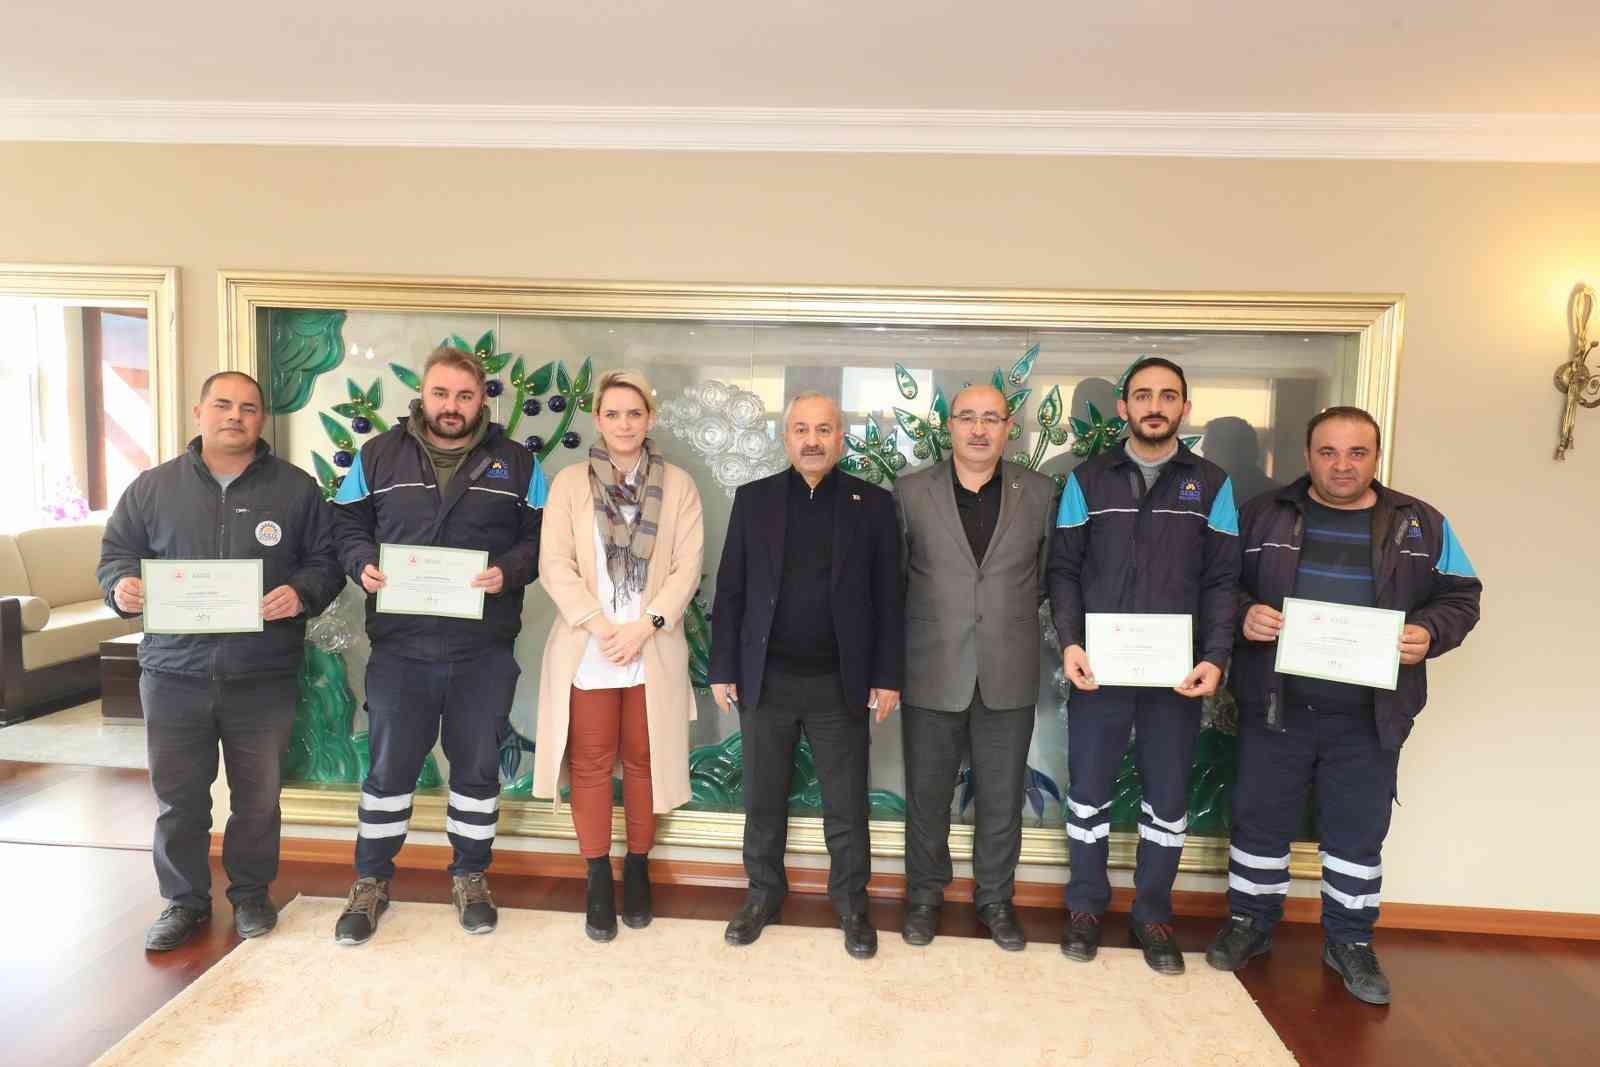 Gebze Belediyesi personellerine teşekkür belgesi verildi #kocaeli